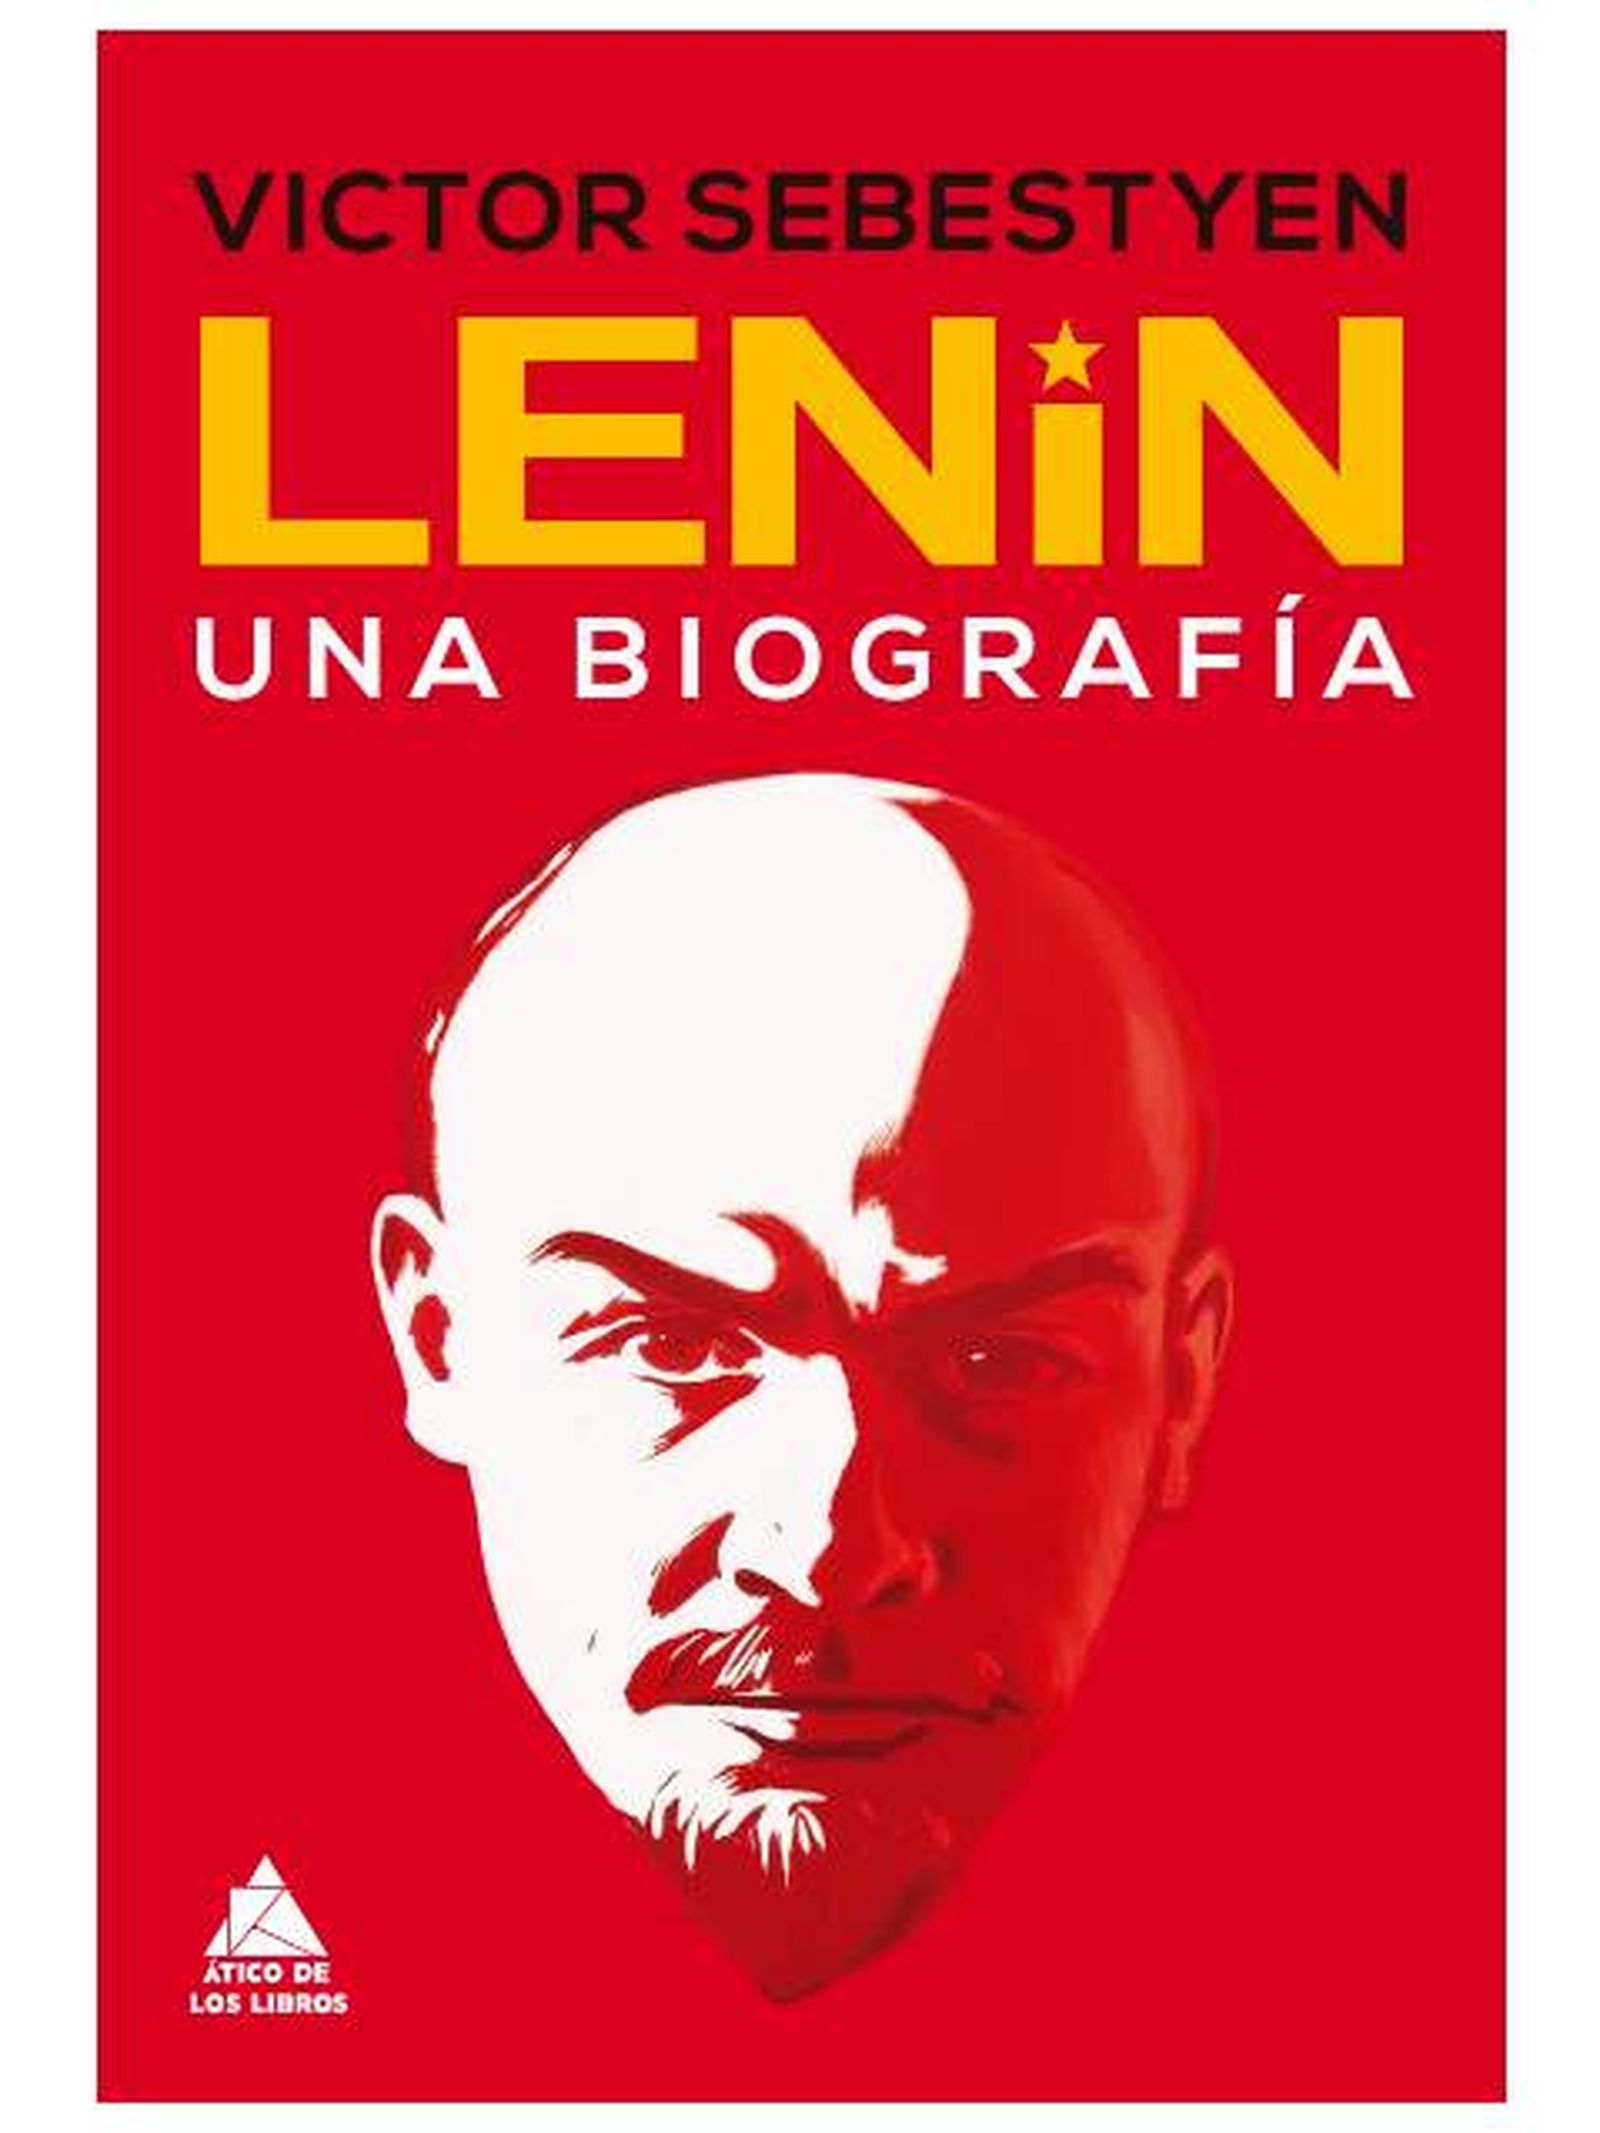 el mito del buen lenin: del exilio de los tés aguados a la orgía de sangre que heredó stalin